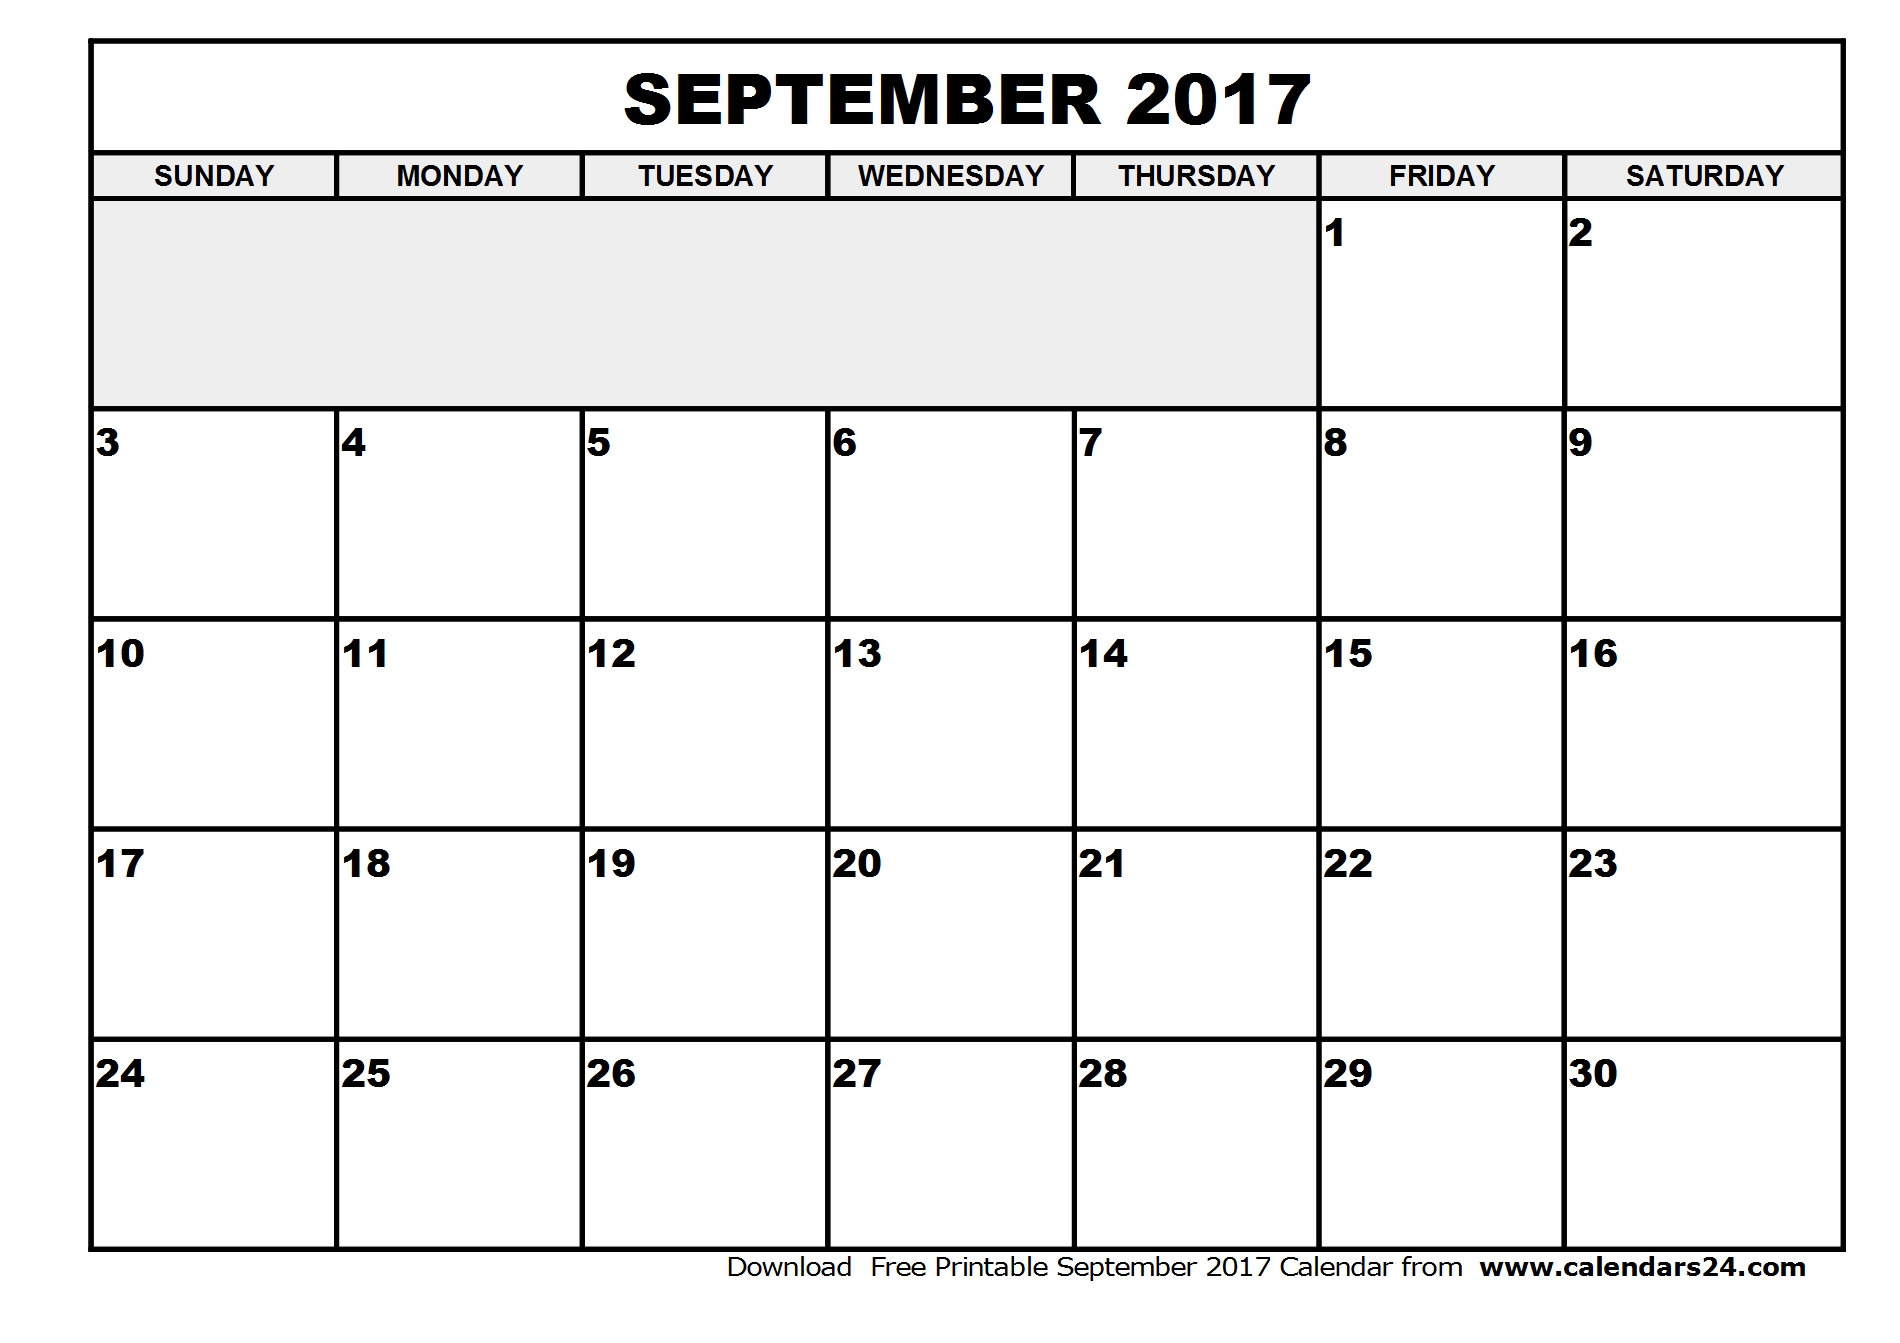 September 2017 Calendar | weekly calendar template